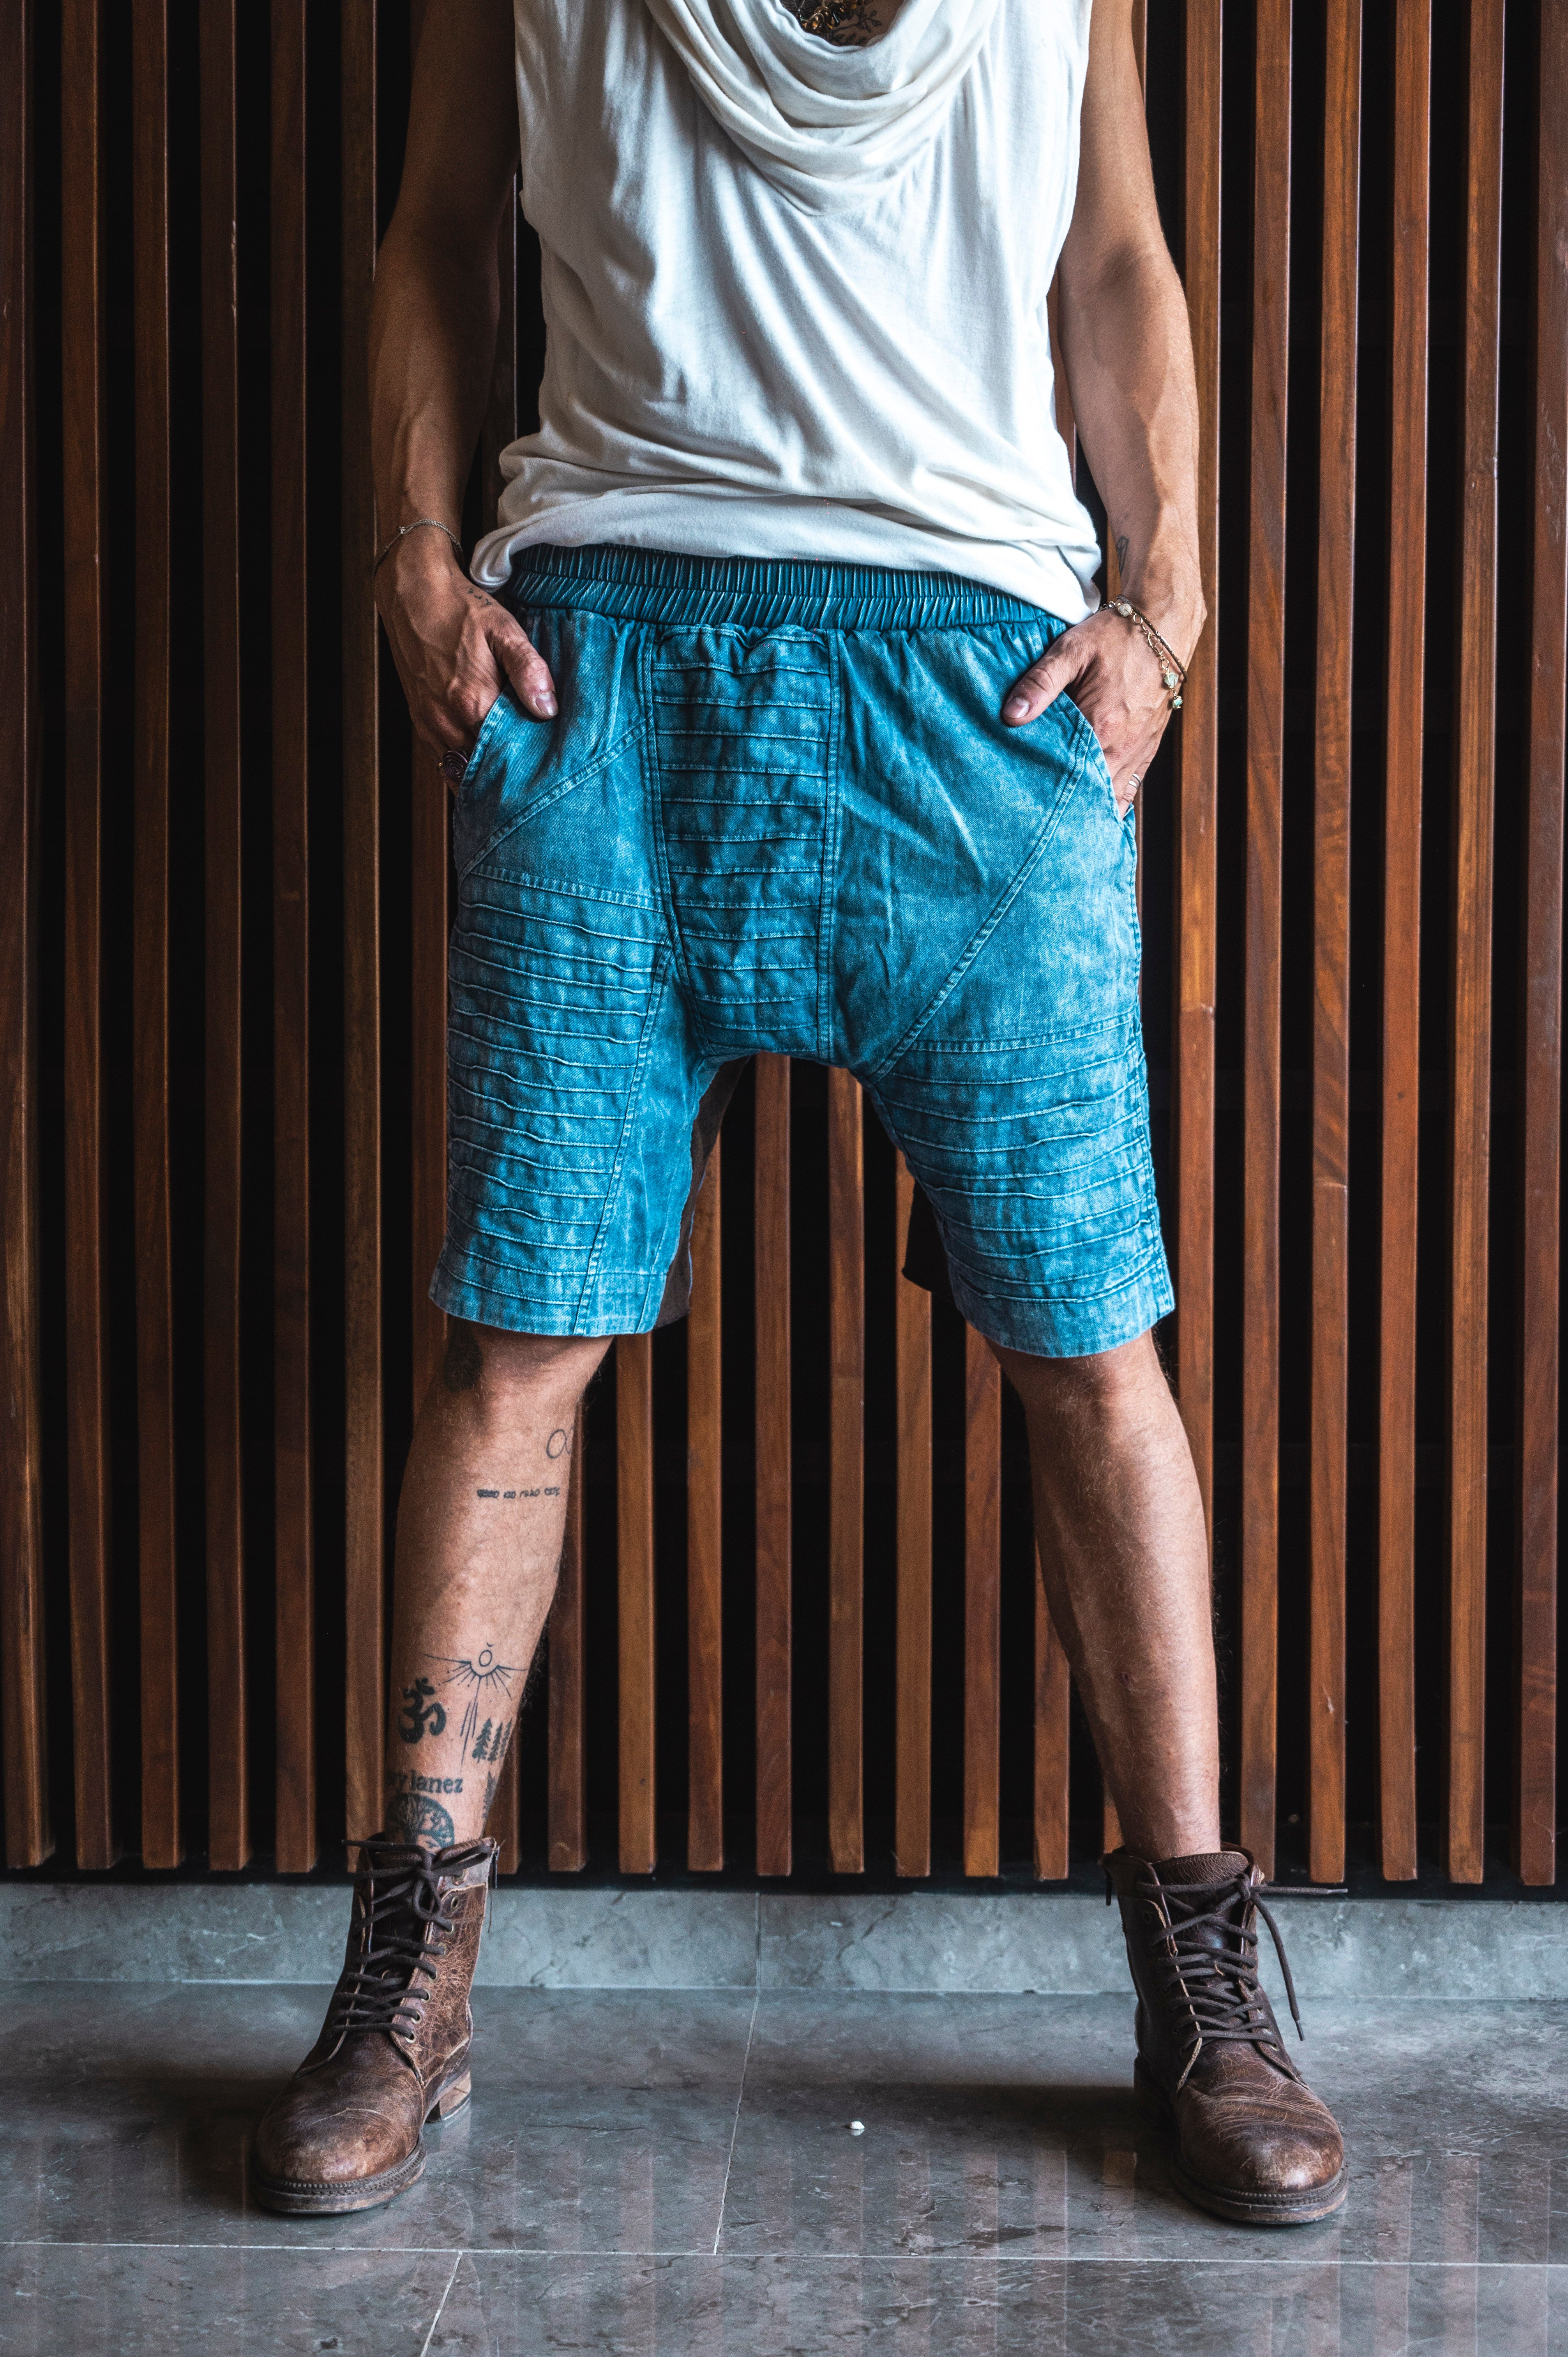 SISU Shorts - Drop Crotch Cotton Shorts with Unique Details